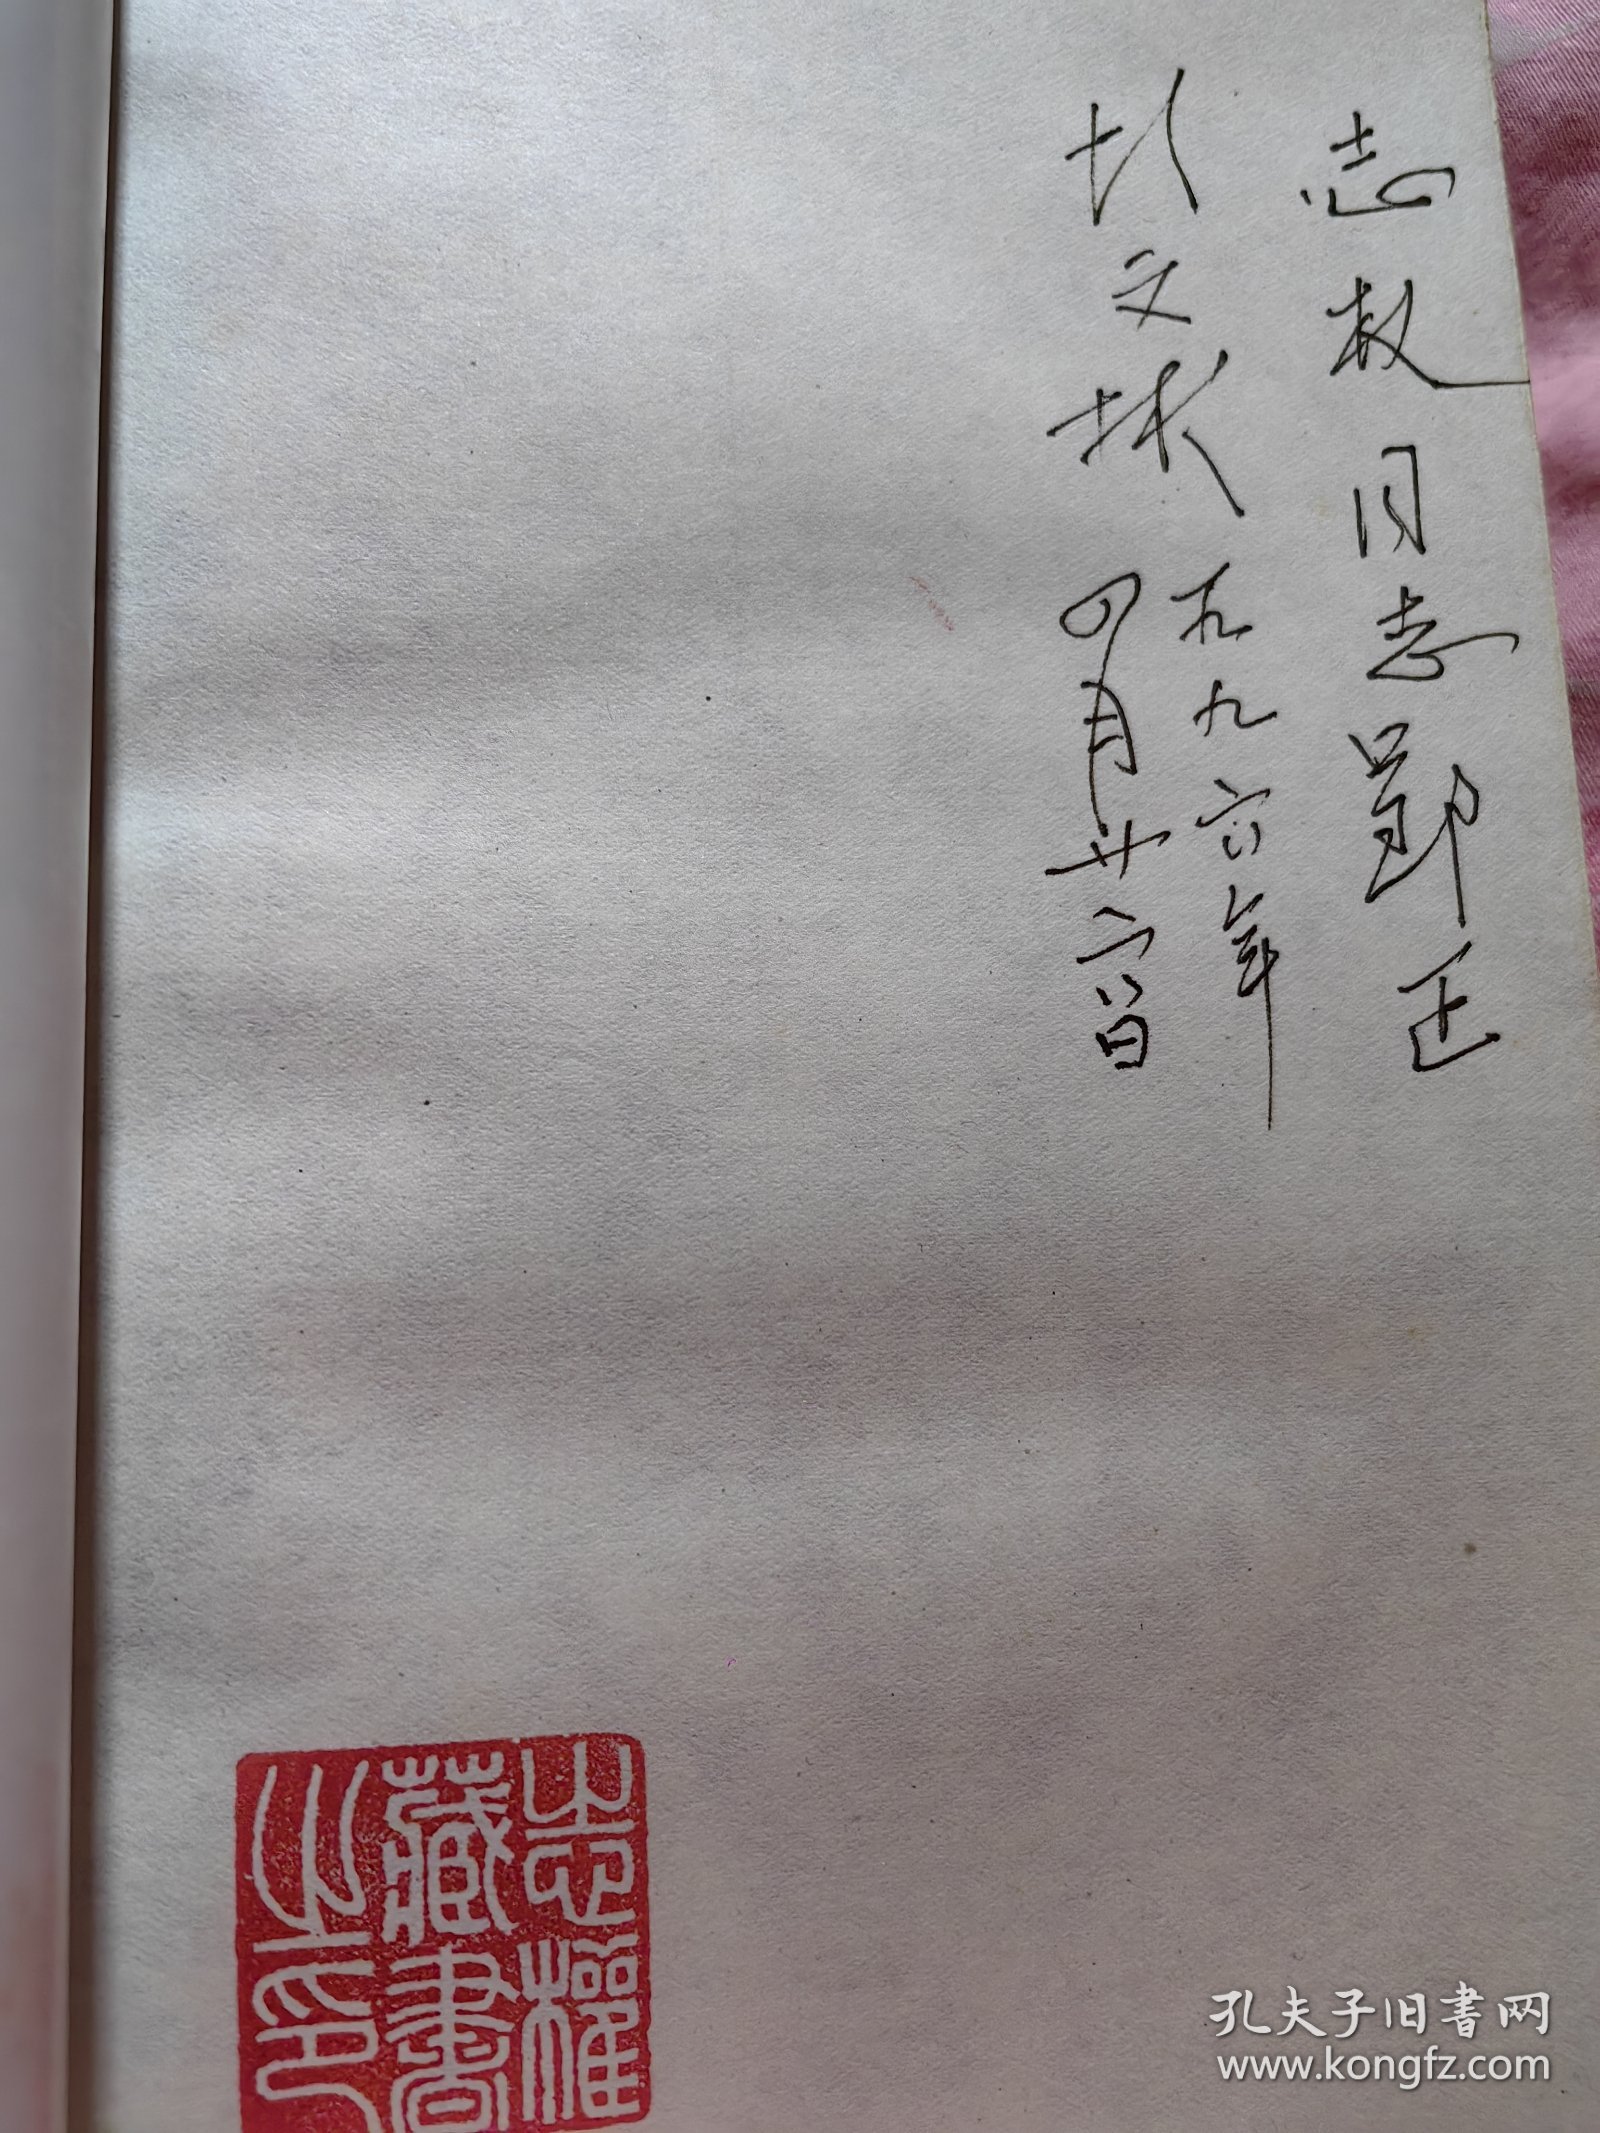 著名红学家 中国红楼梦学会副会长—胡文彬 签名本《红楼梦放眼录》1995年一版一印